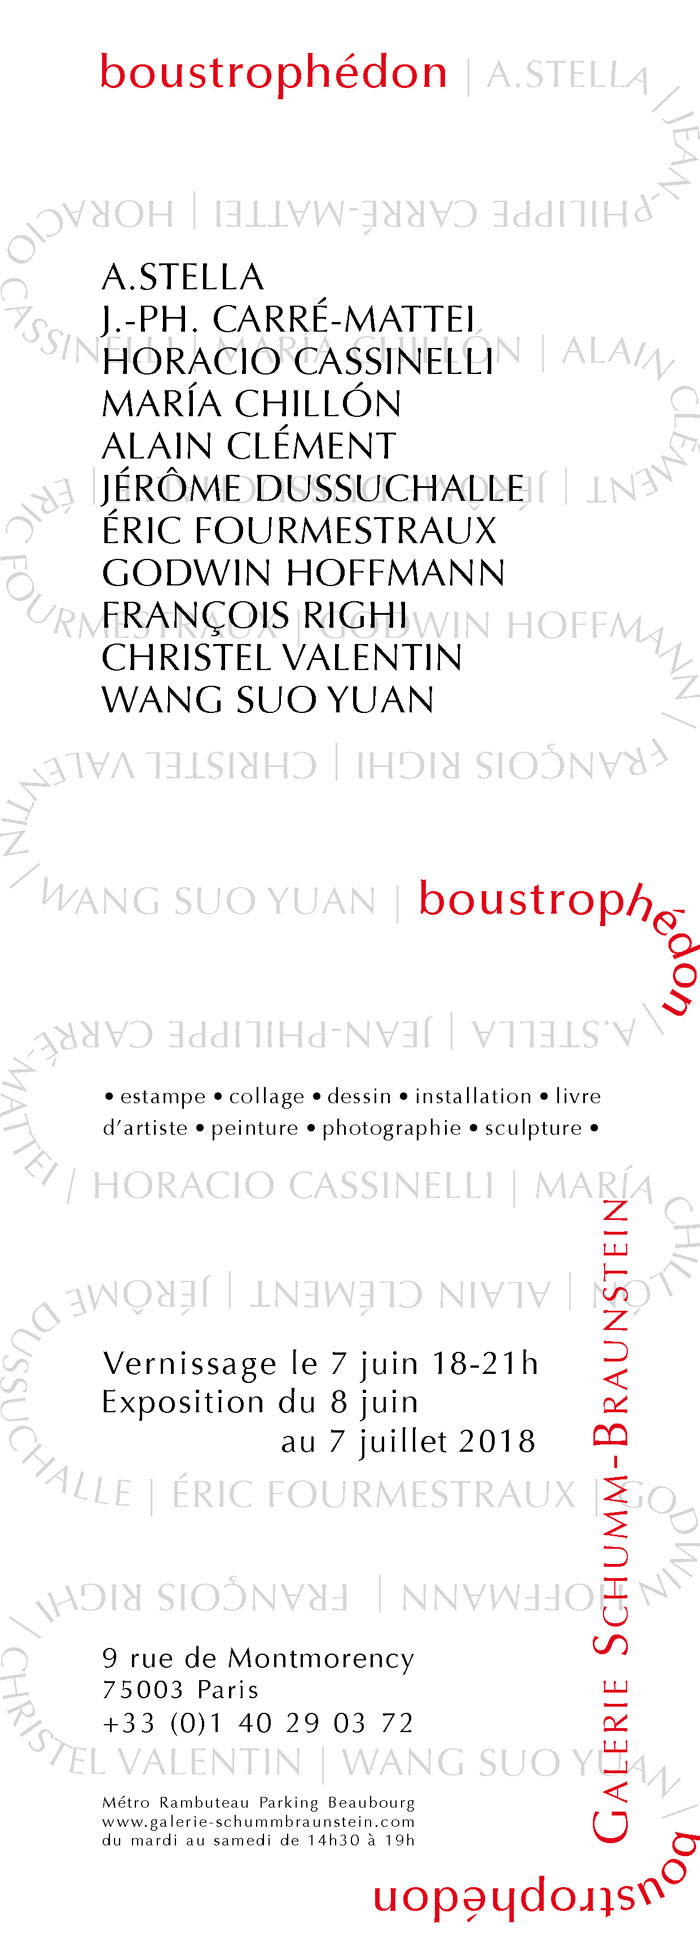 Invitation à l'exposition "Boustrophéon"